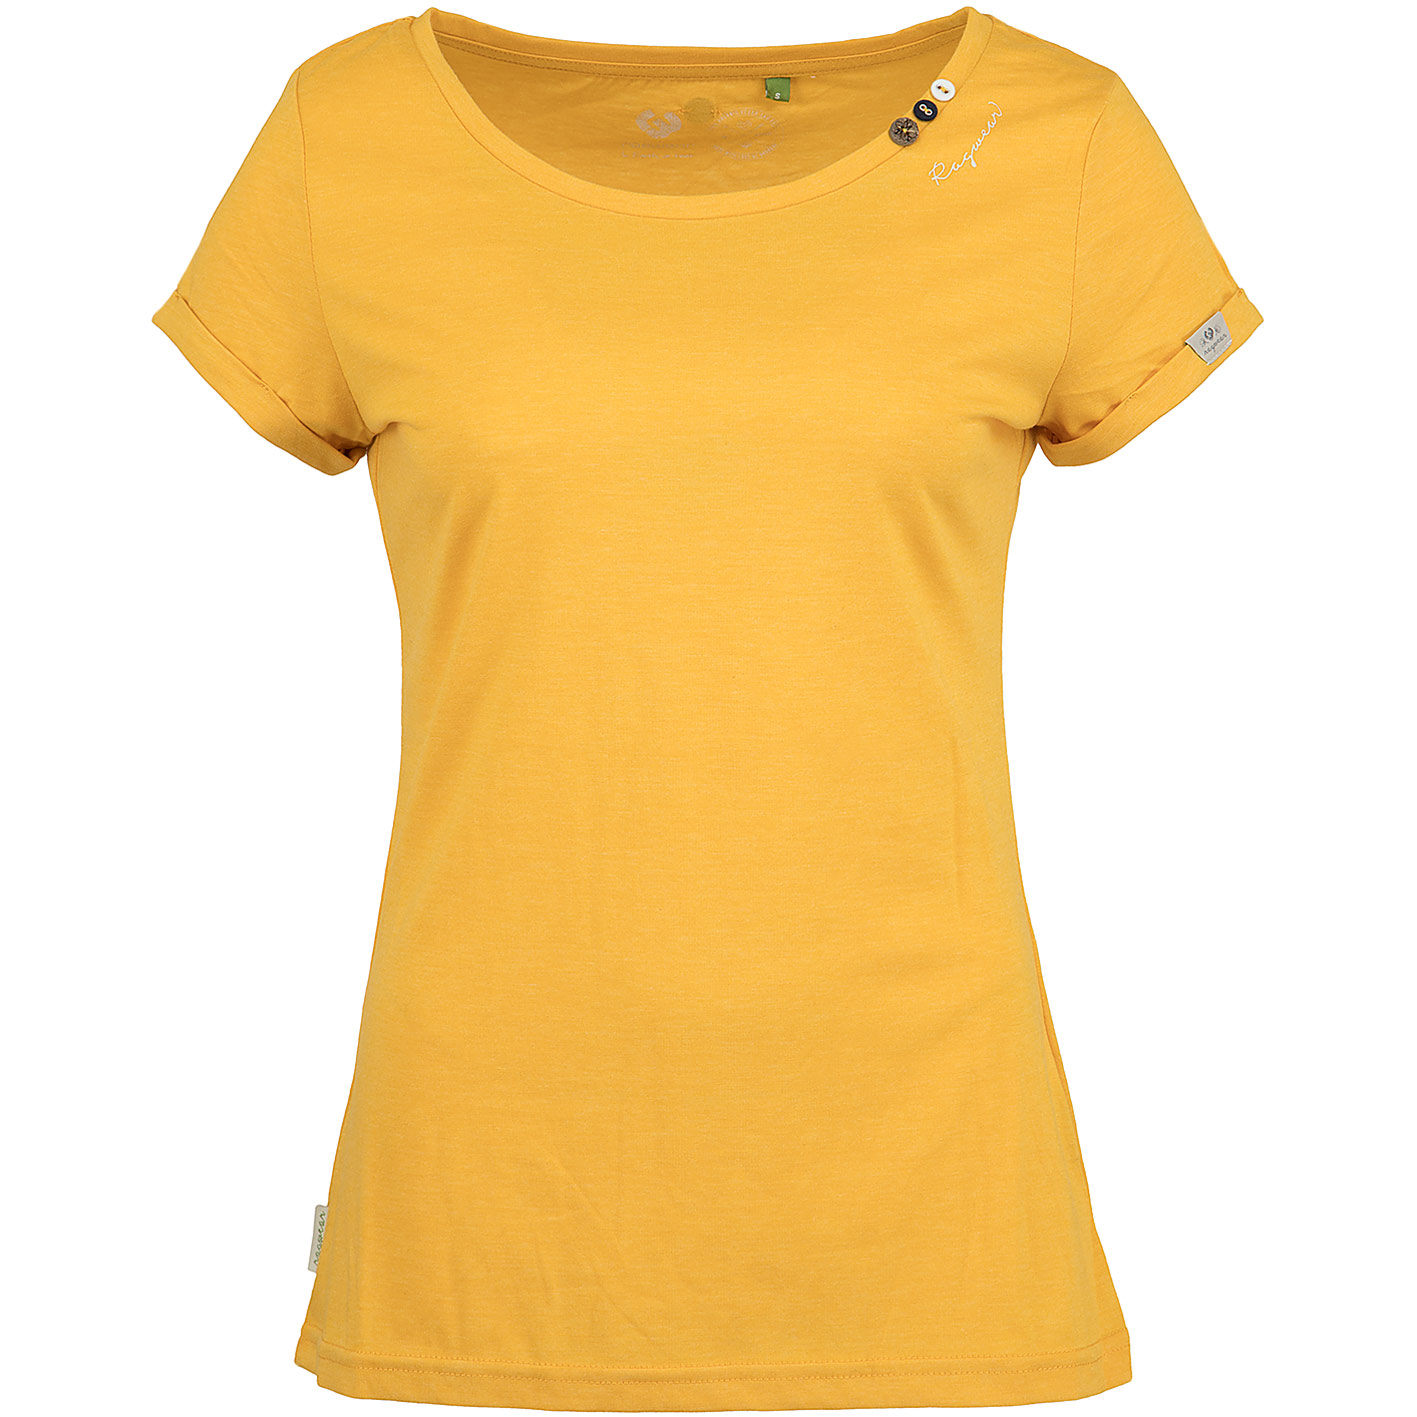 ☆ Ragwear Damen T-Shirt Florah Organic gelb - hier bestellen!